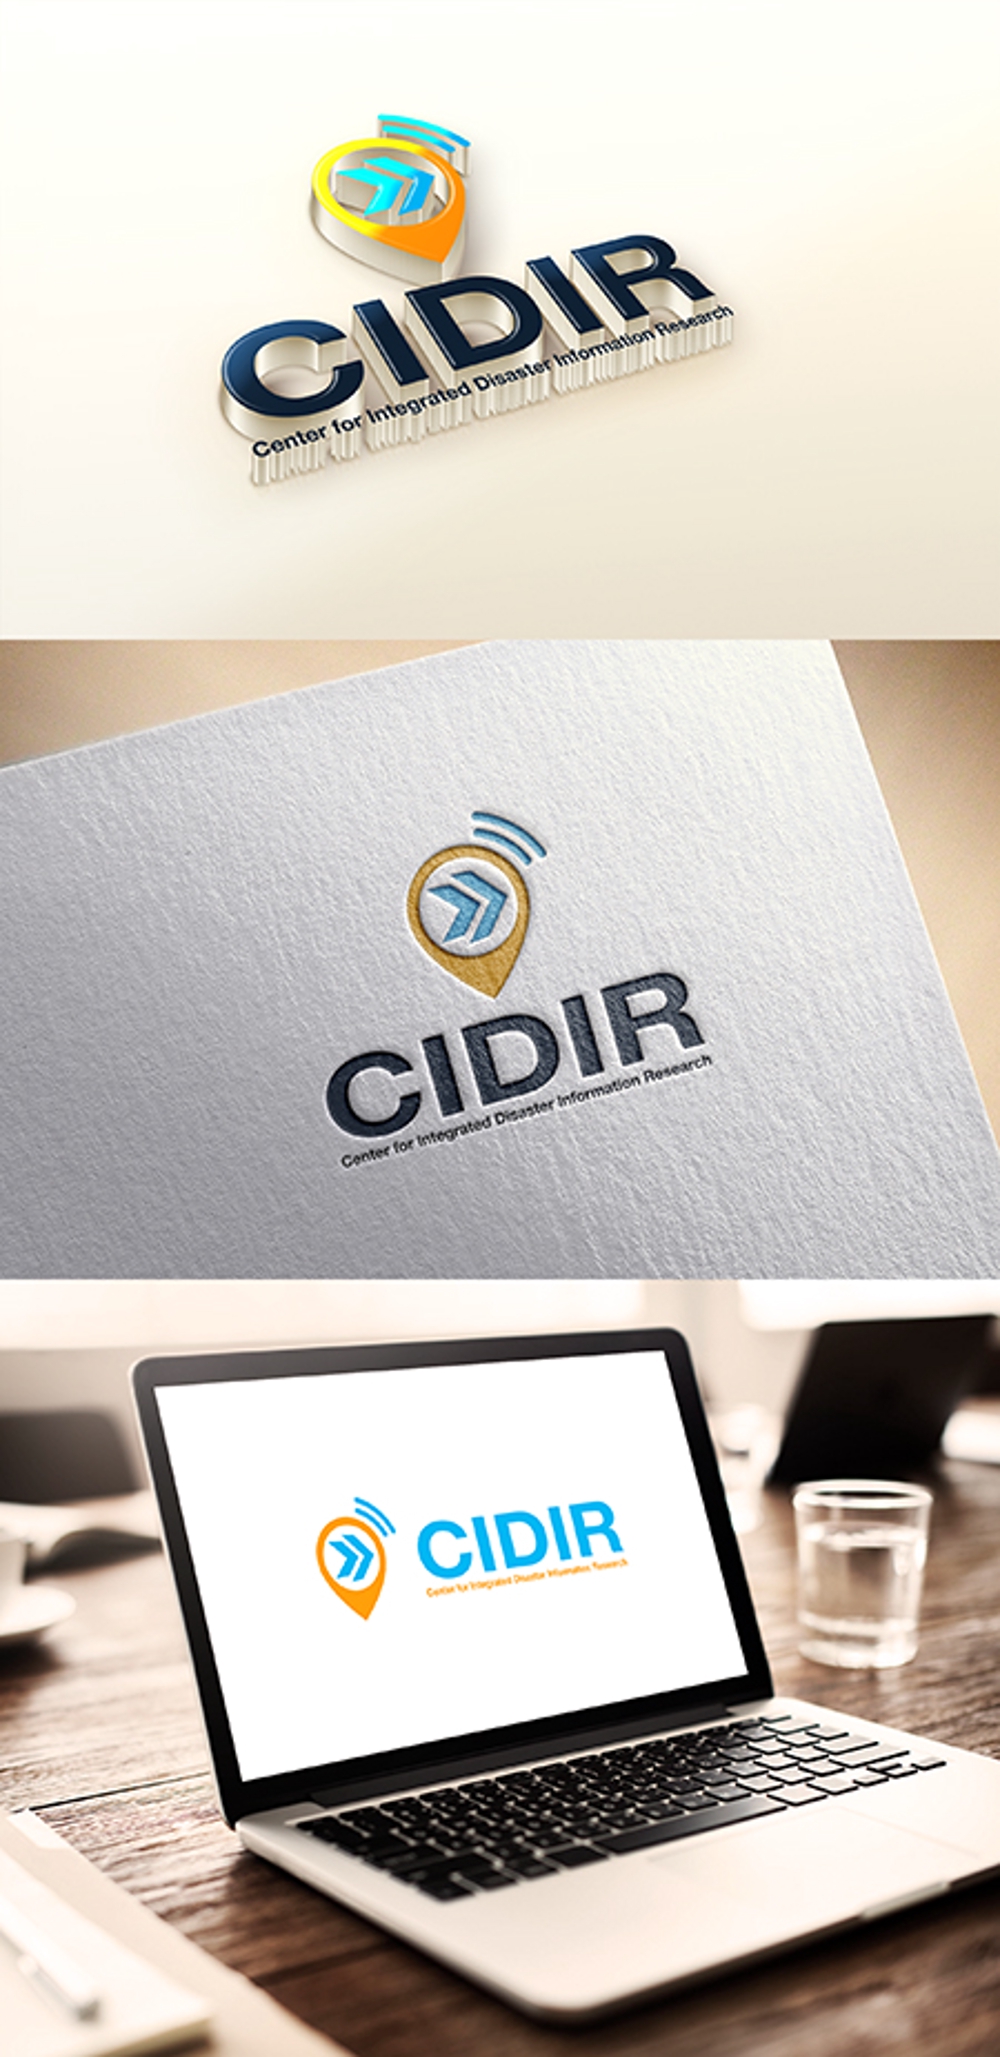 東京大学の防災情報に関する研究組織である「総合防災情報研究センター（CIDIR)」のロゴ